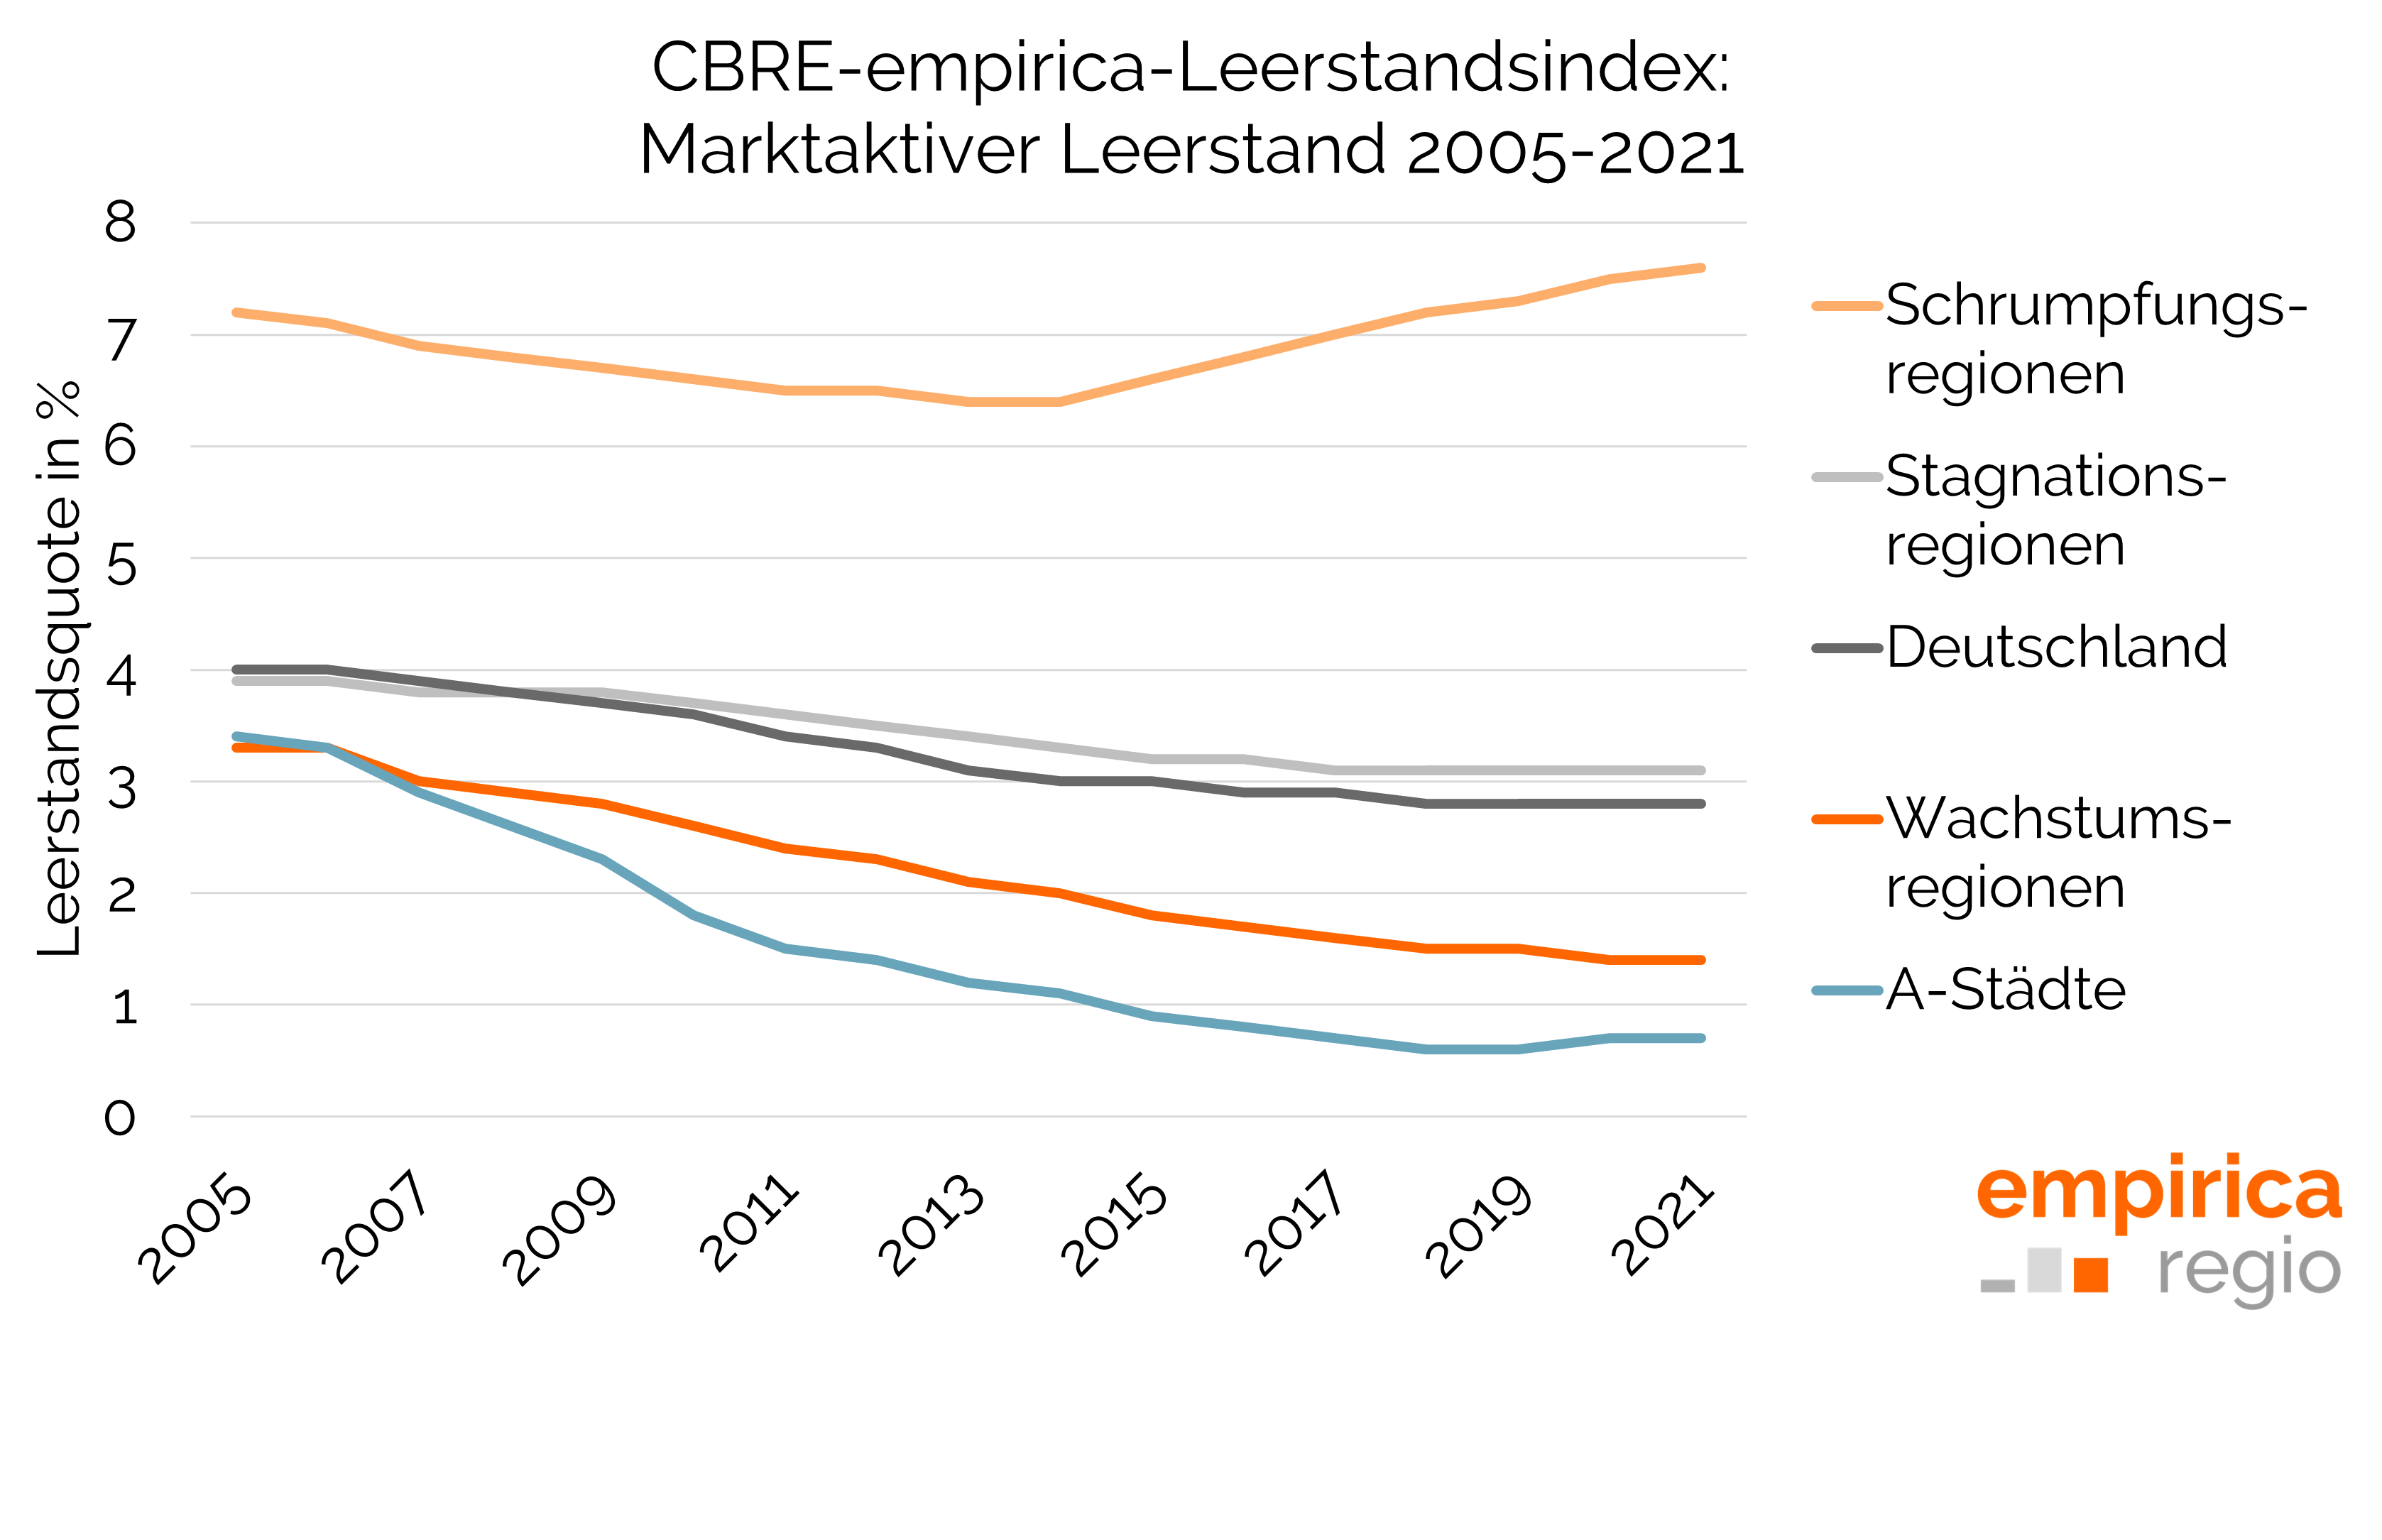 CBRE-empirica-Leerstandsindex für ausgewählte Regionstypen 2005 bis 2021